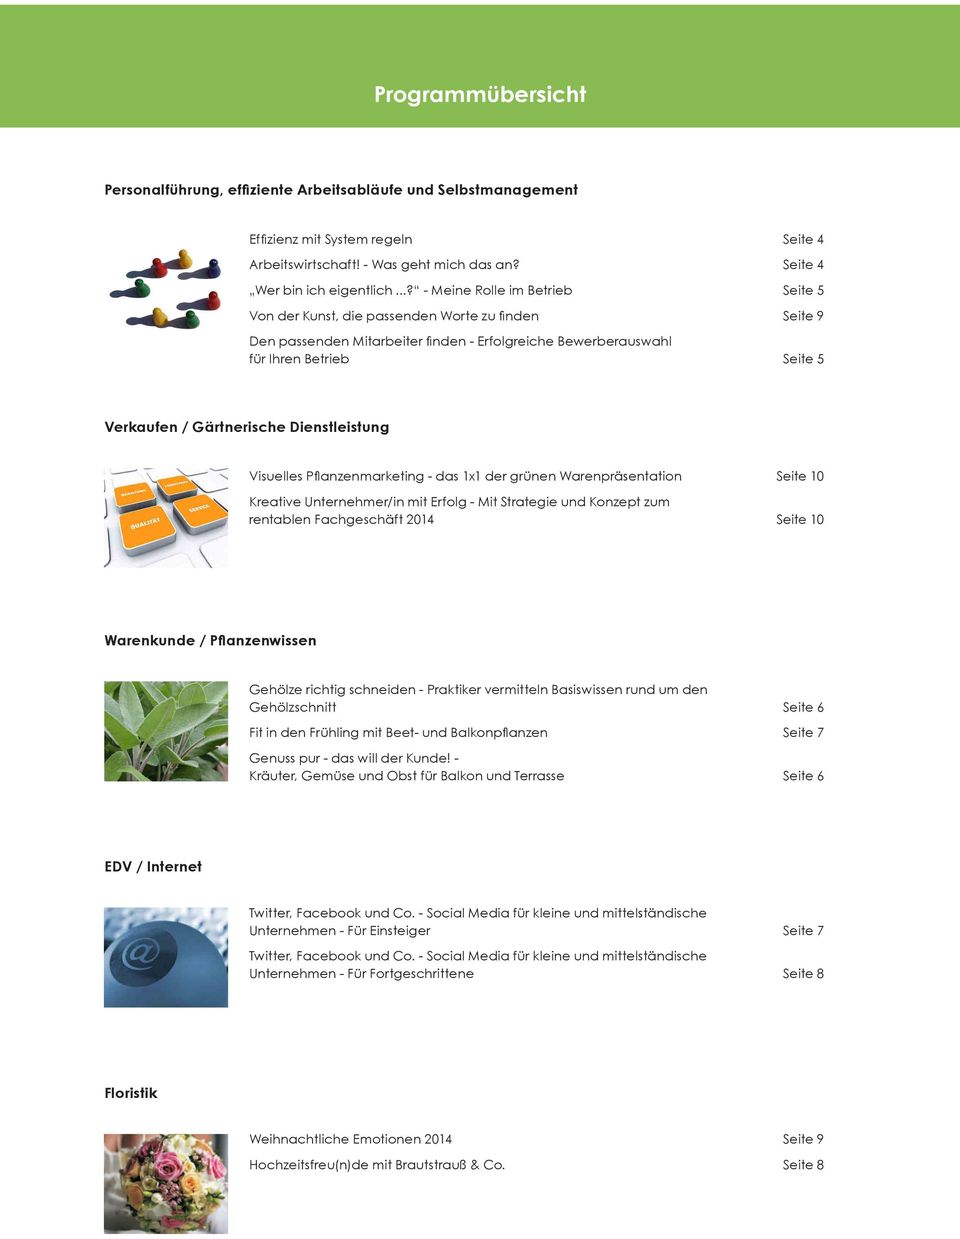 Gärtnerische Dienstleistung Visuelles Pflanzenmarketing - das 1x1 der grünen Warenpräsentation Seite 10 Kreative Unternehmer/in mit Erfolg - Mit Strategie und Konzept zum rentablen Fachgeschäft 2014